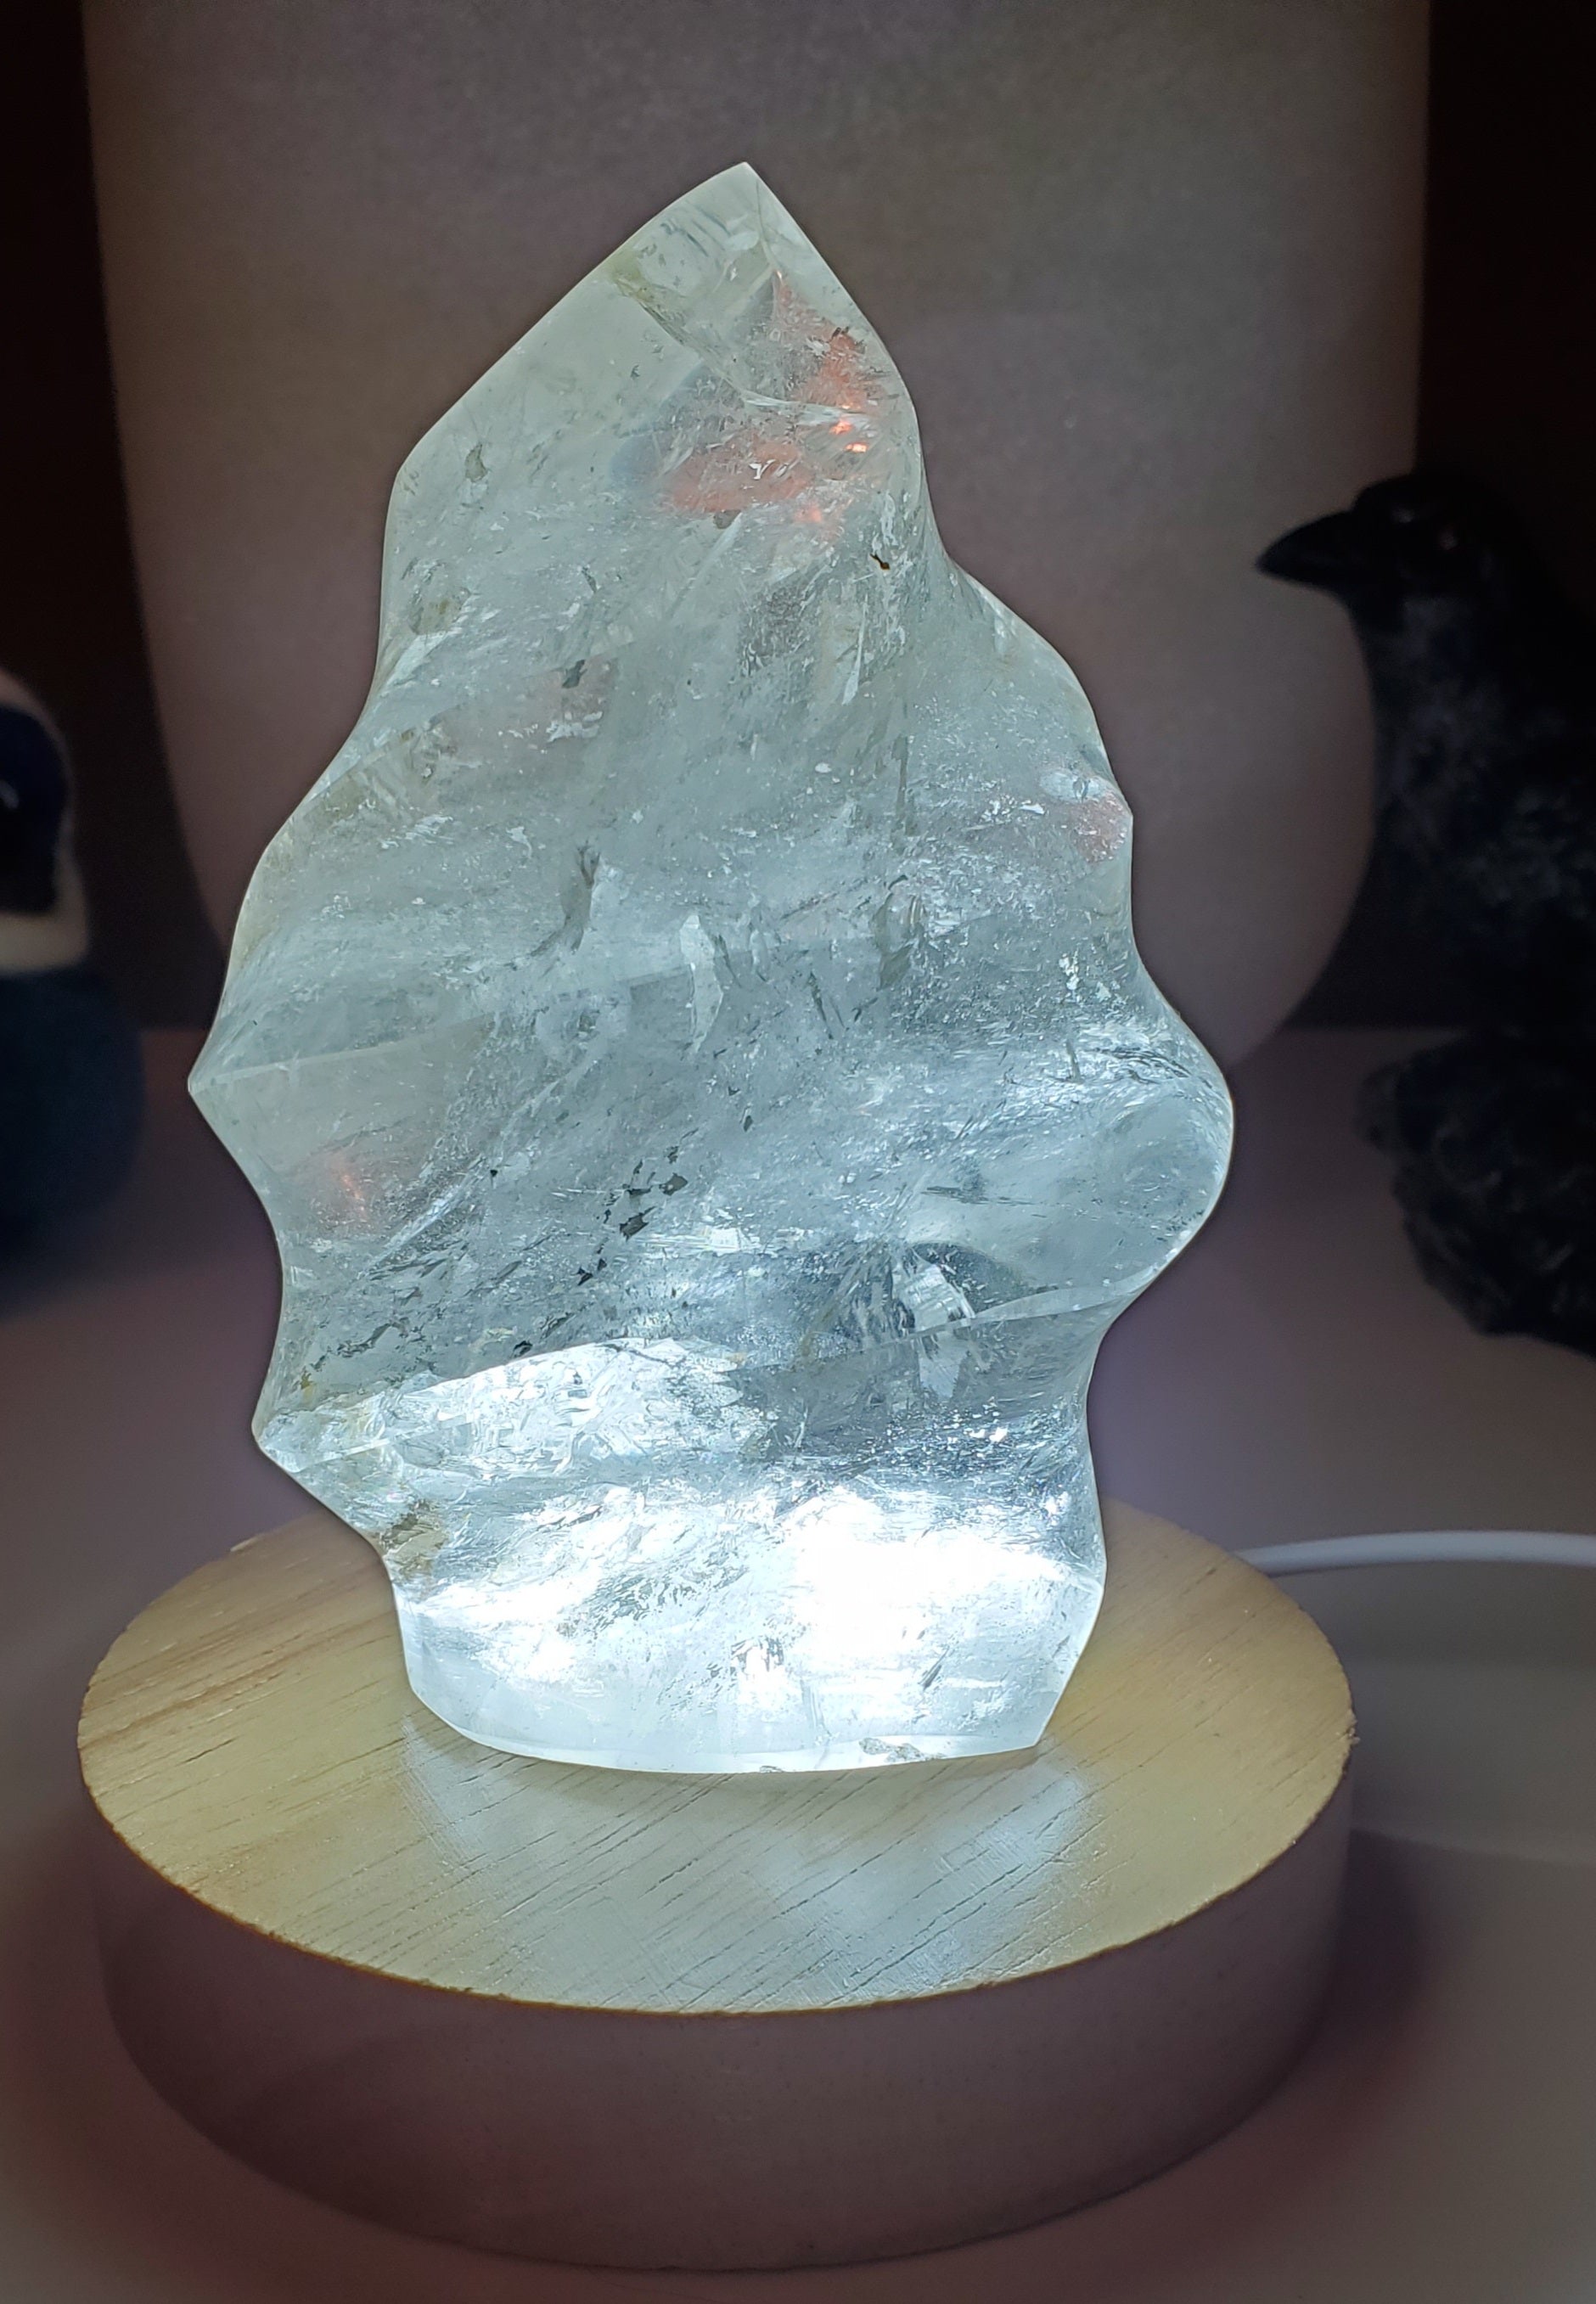 Clear quartz sphere or flame